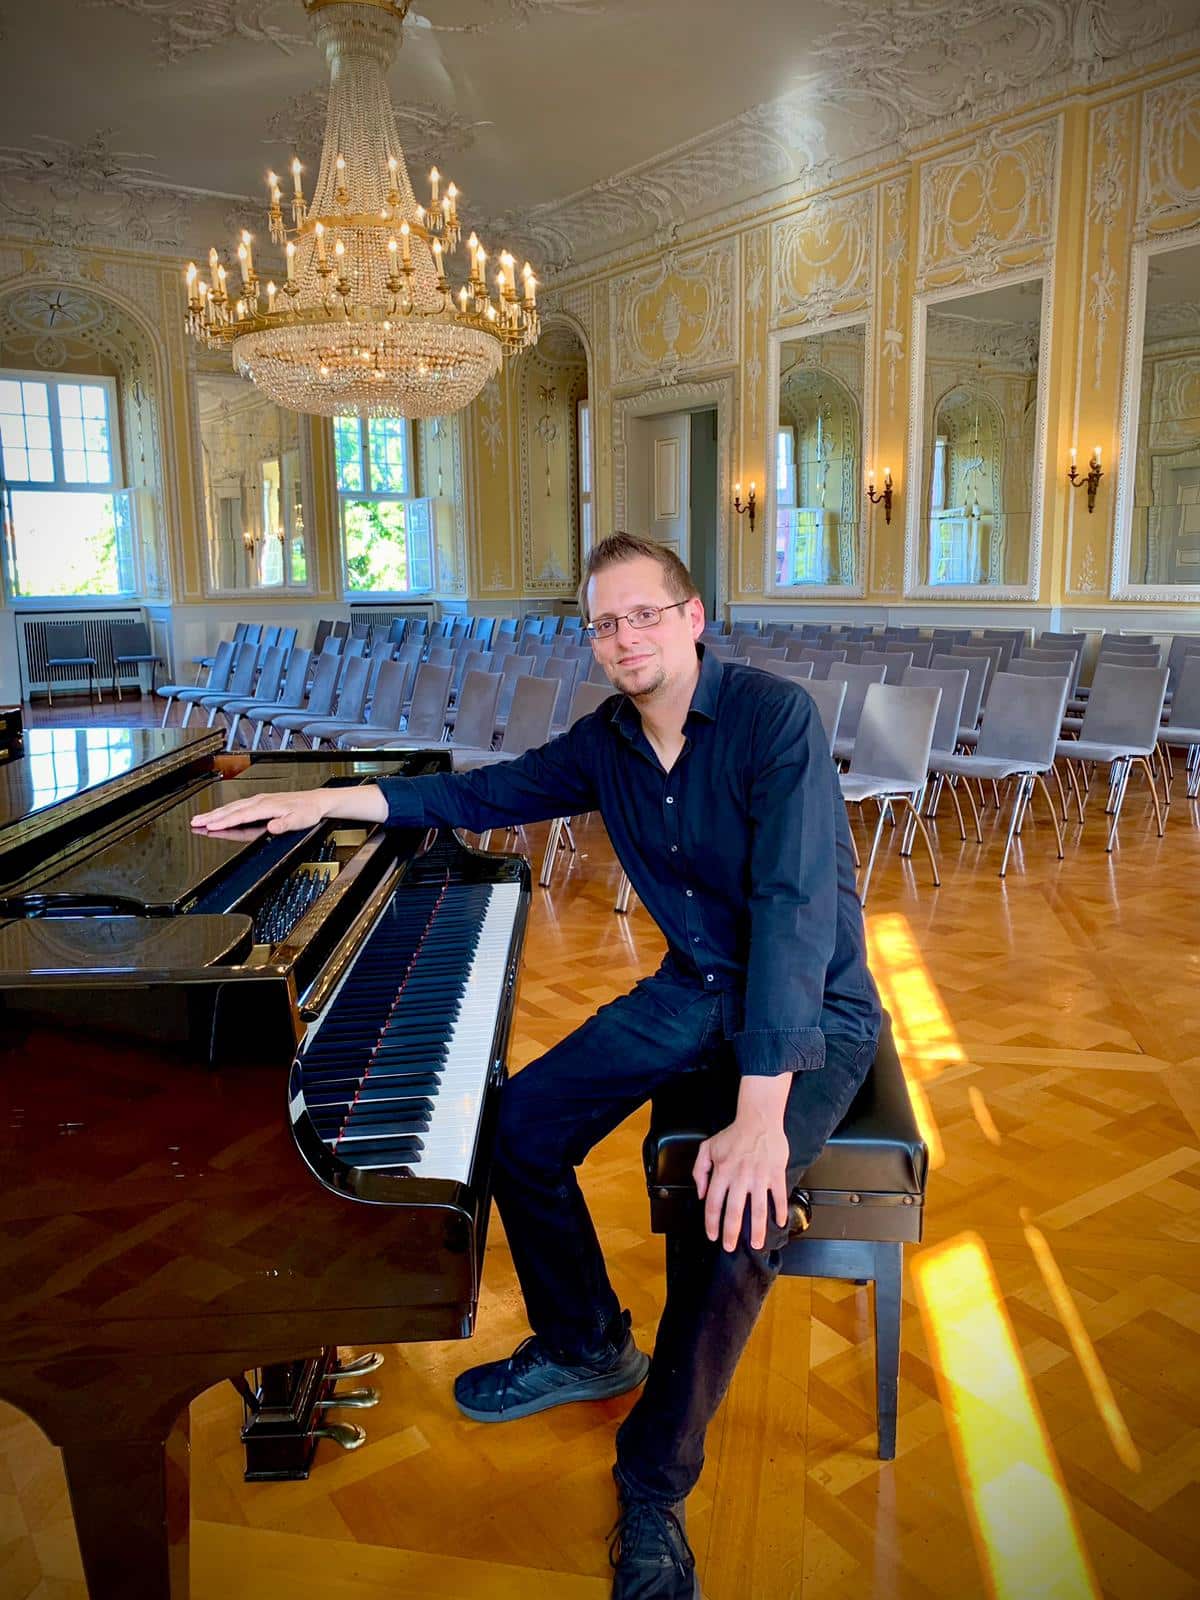 Andreas Czeppel, der Klavierlehrer von meineMusikschule.net im Interview. Ein Virtuose am Klavier